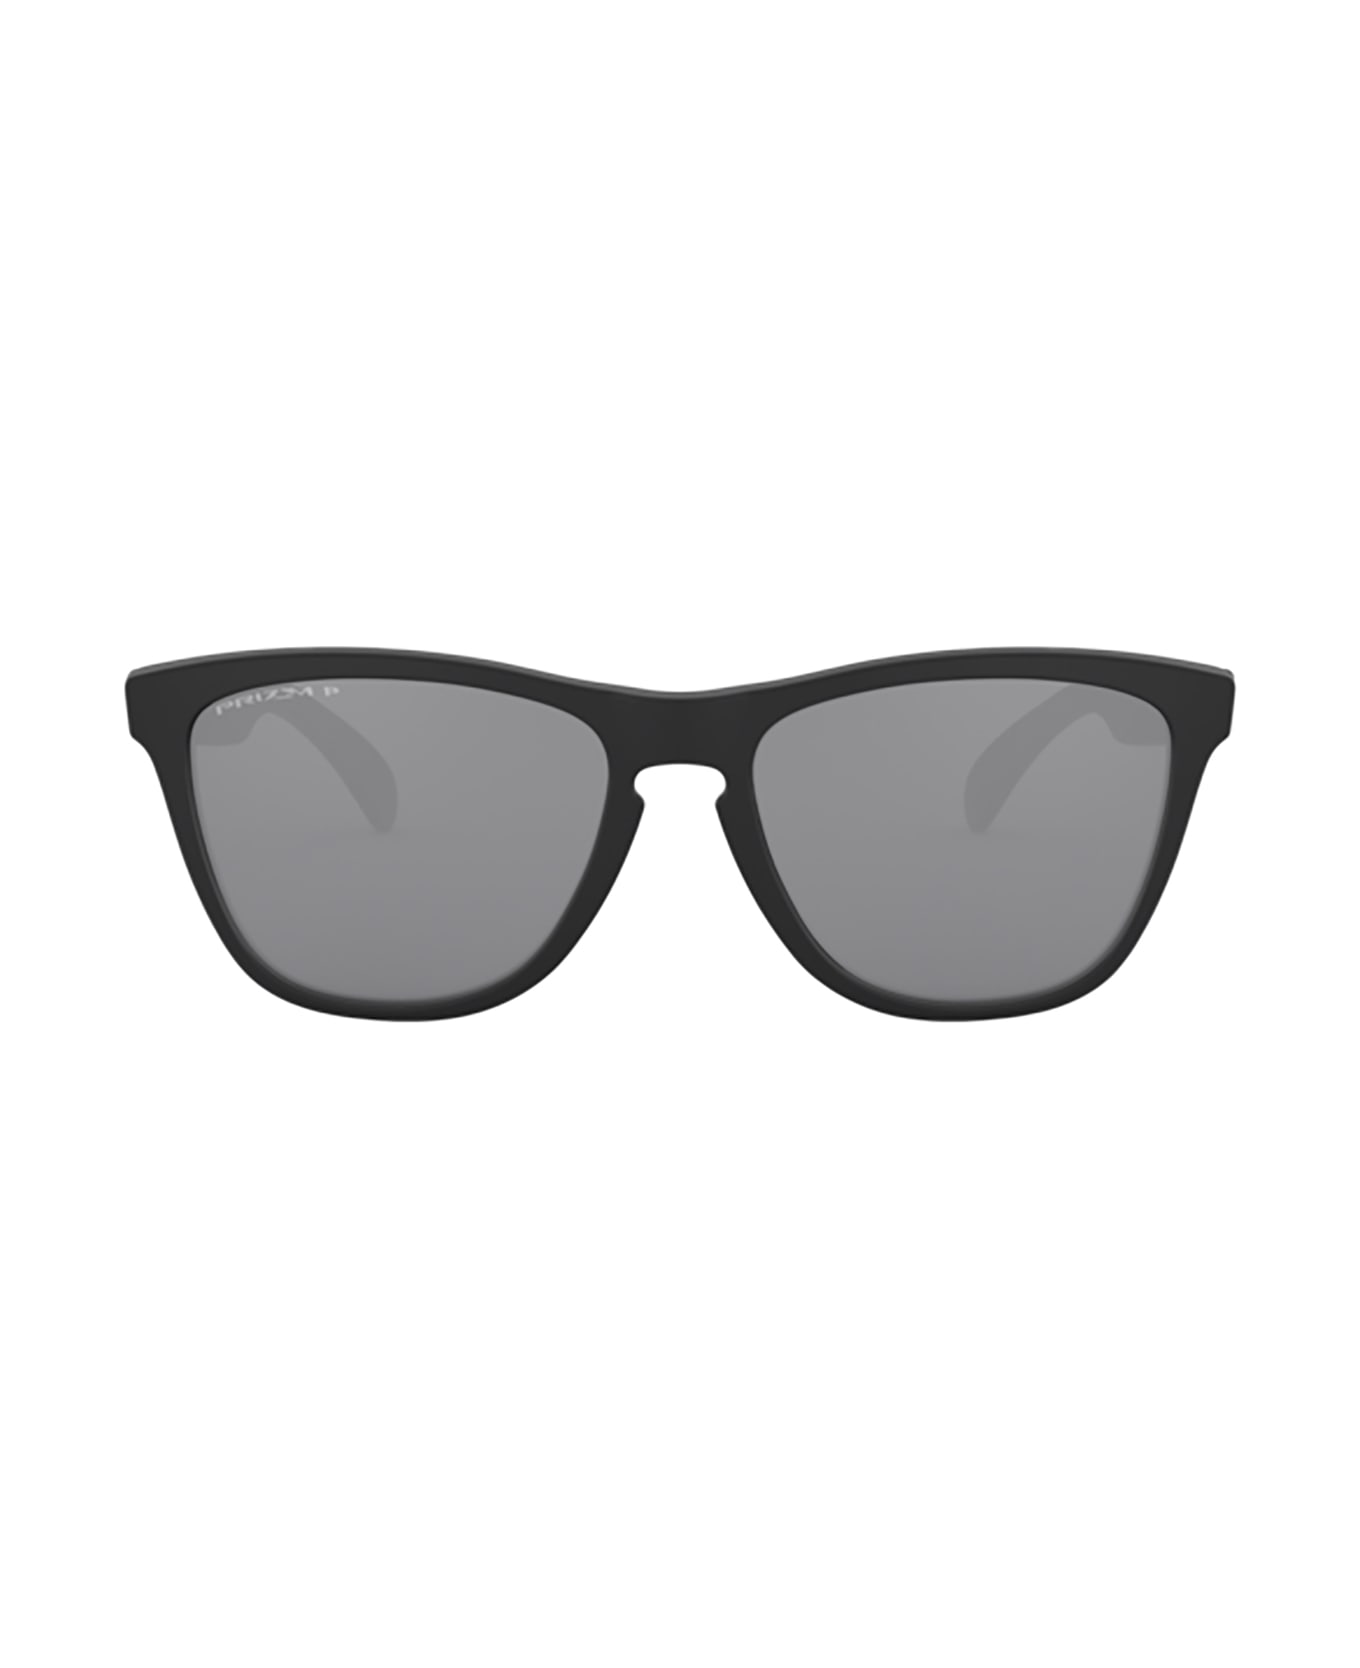 Oakley Oo9013 Matte Black Sunglasses - Matte Black サングラス